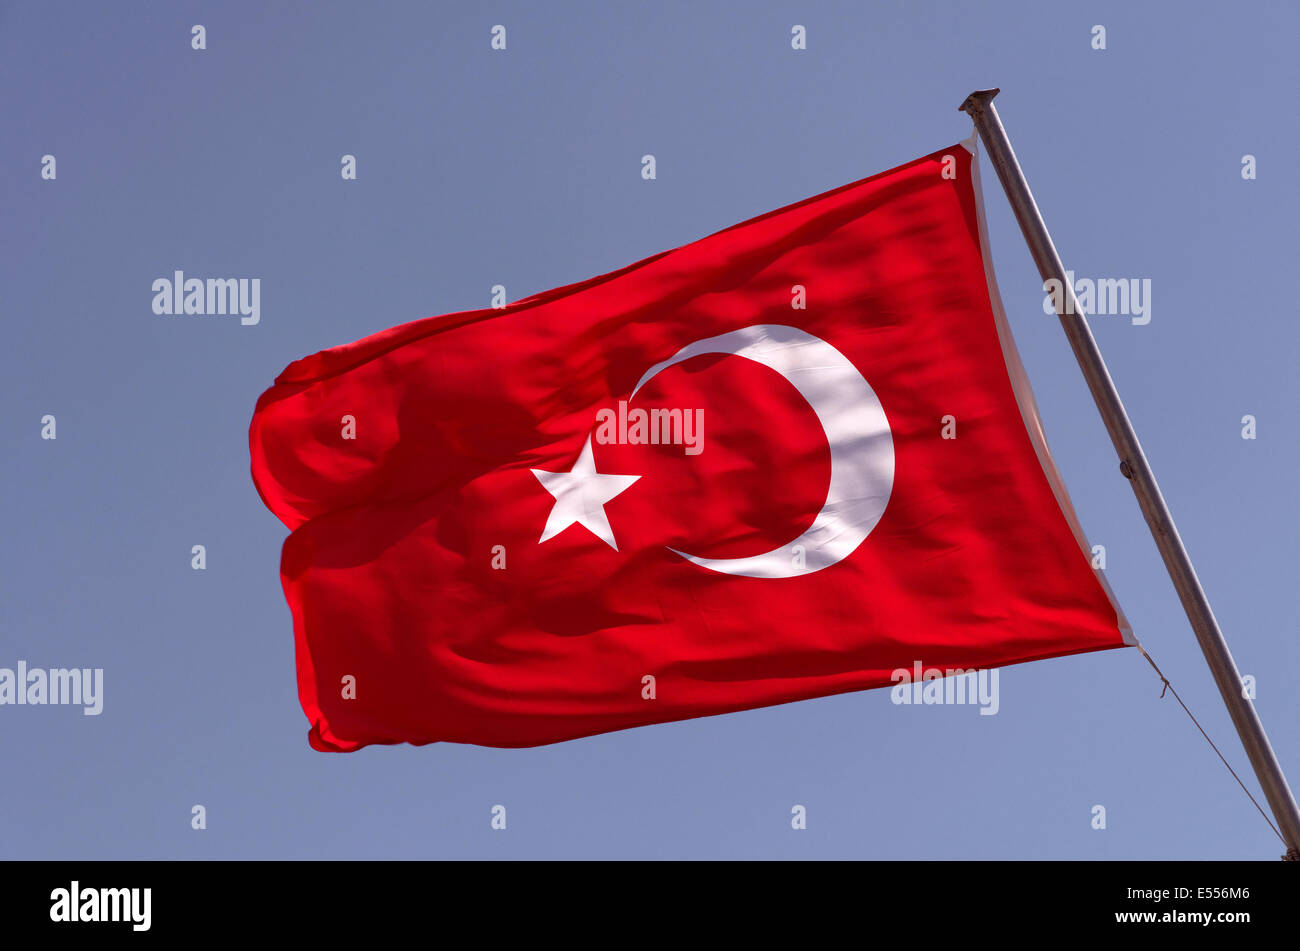 Turkische Flagge Mit Halbmond Und Stern Gegen Blauen Himmel Stockfotografie Alamy